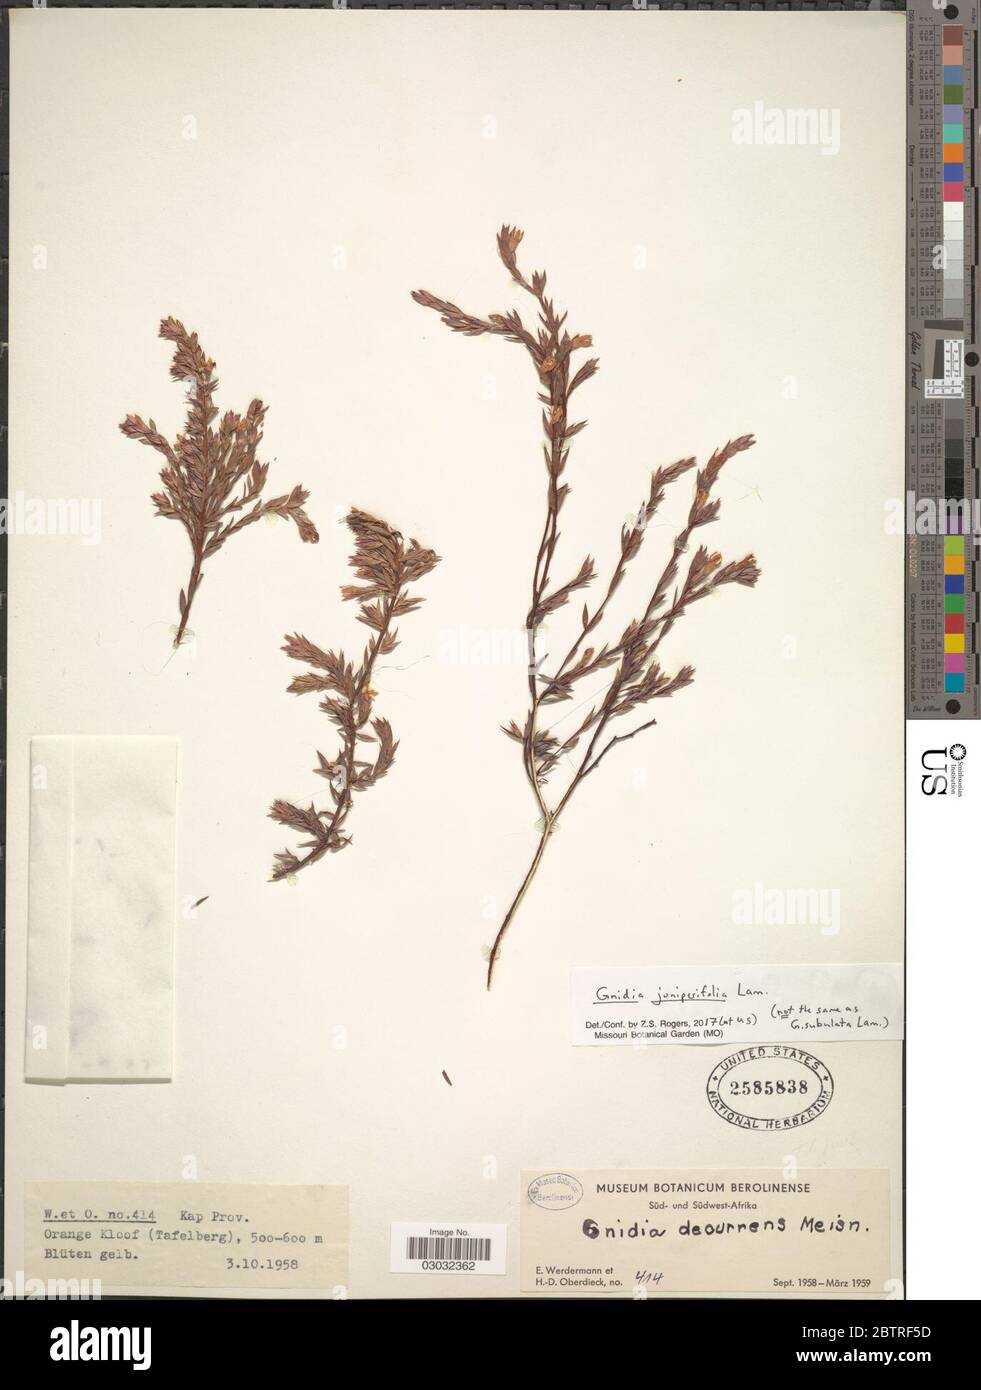 Gnidia juniperifolia Lam. Stock Photo